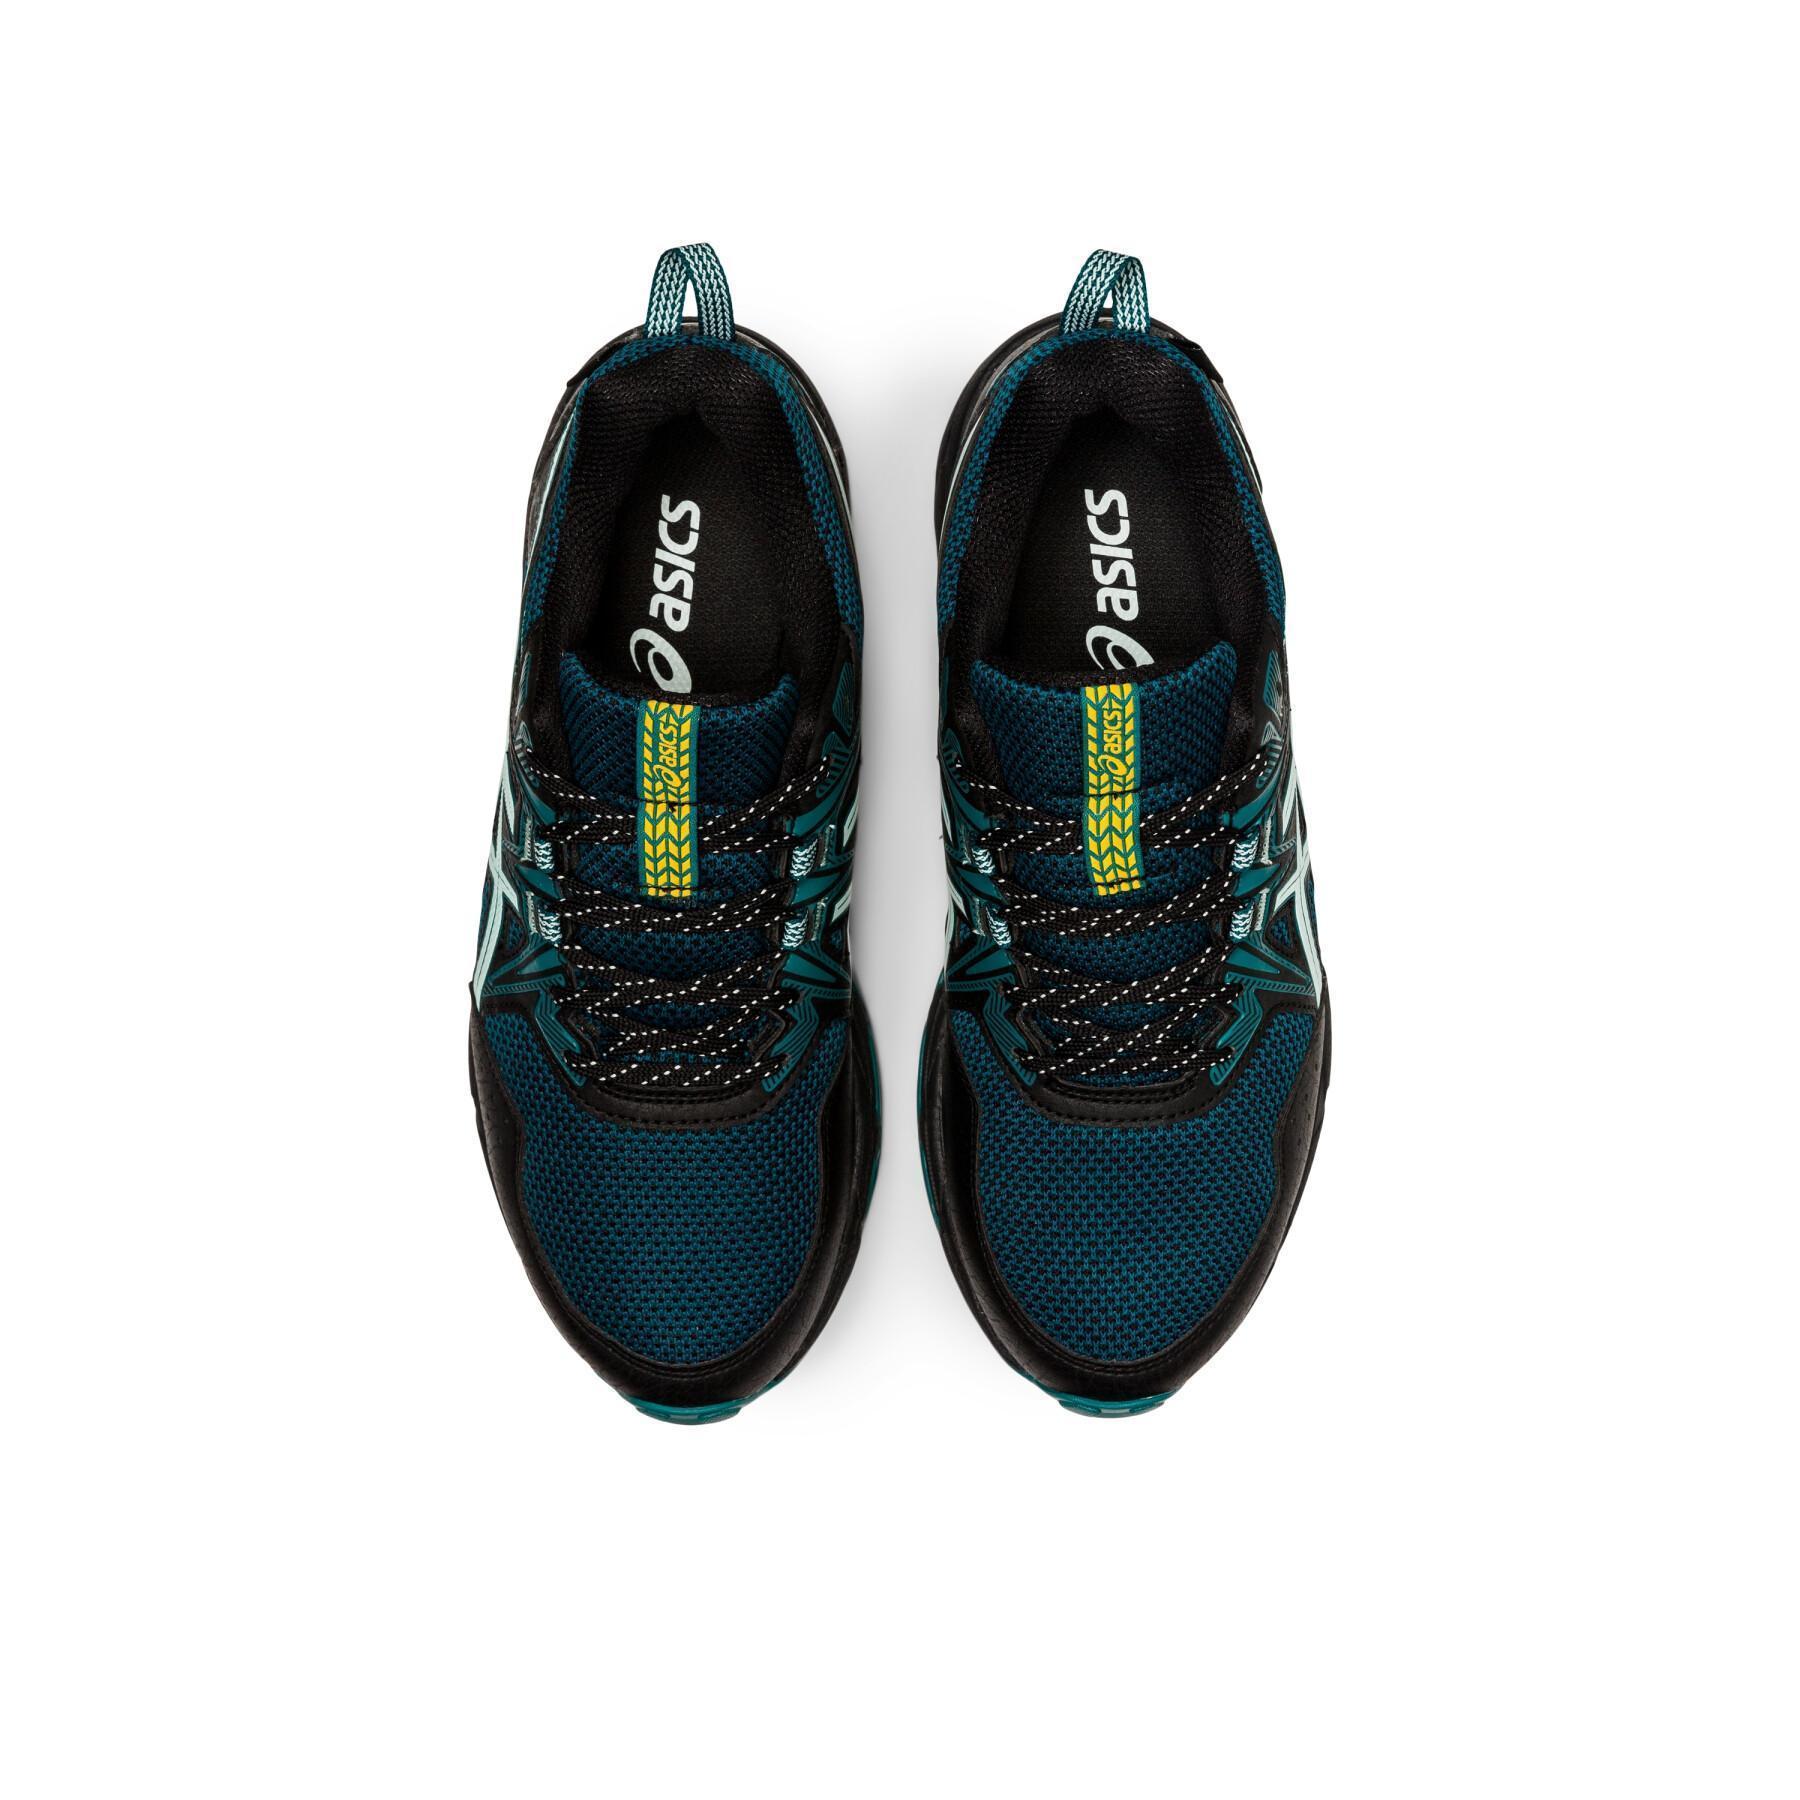 Women's trail shoes Asics Gel-venture 8 waterproof